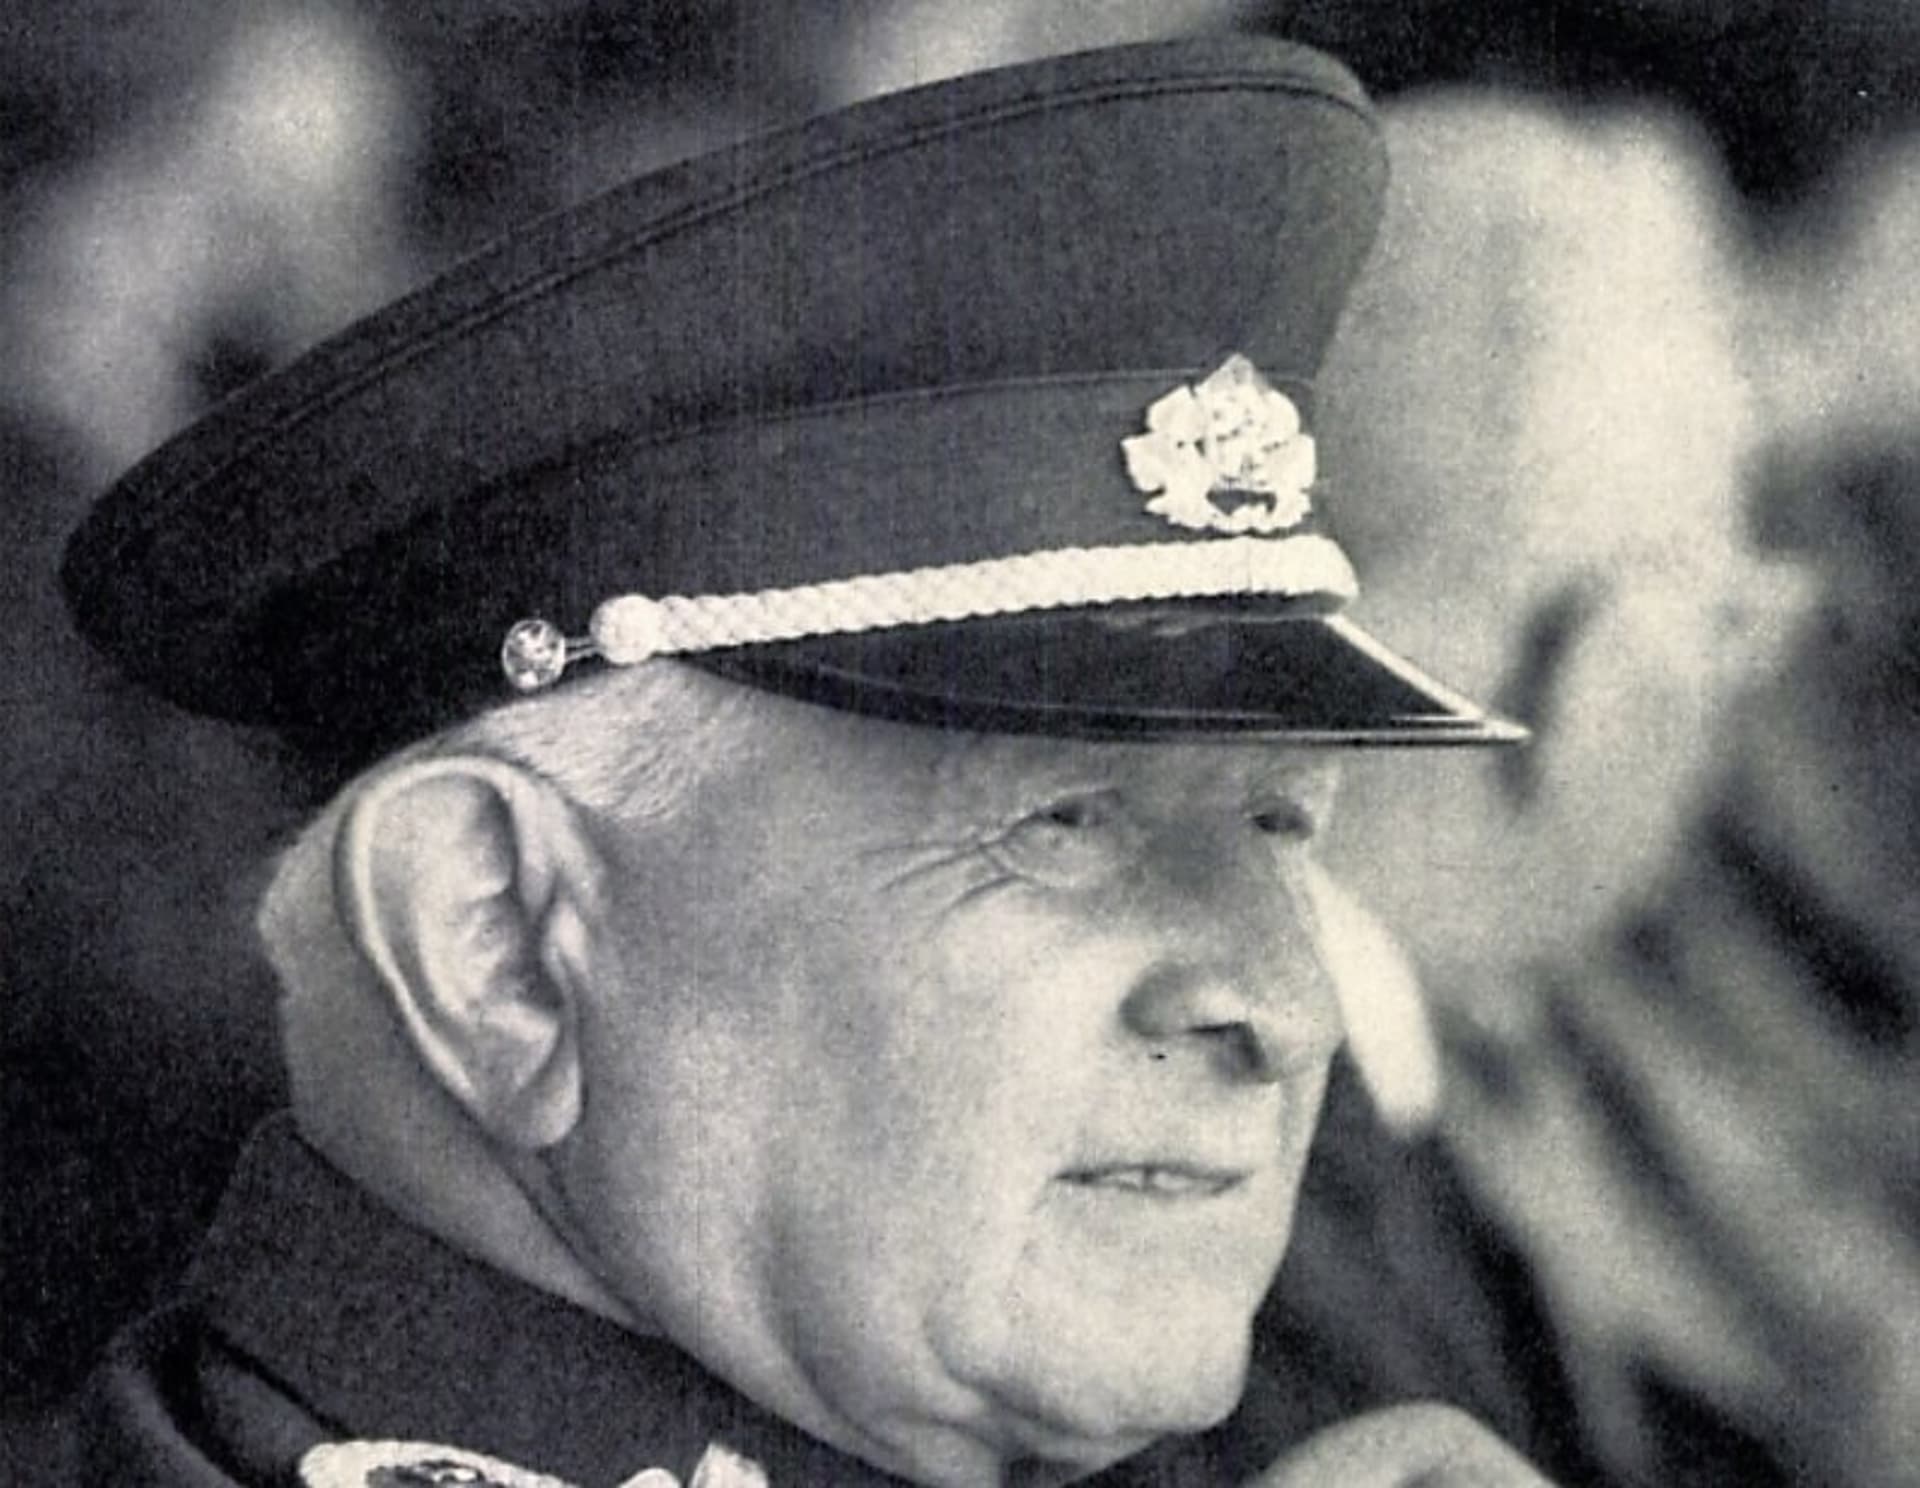 Generál Ludvík Svoboda. Z knihy Náš velitel z roku 1971, uložené v Národní knihovně v Praze